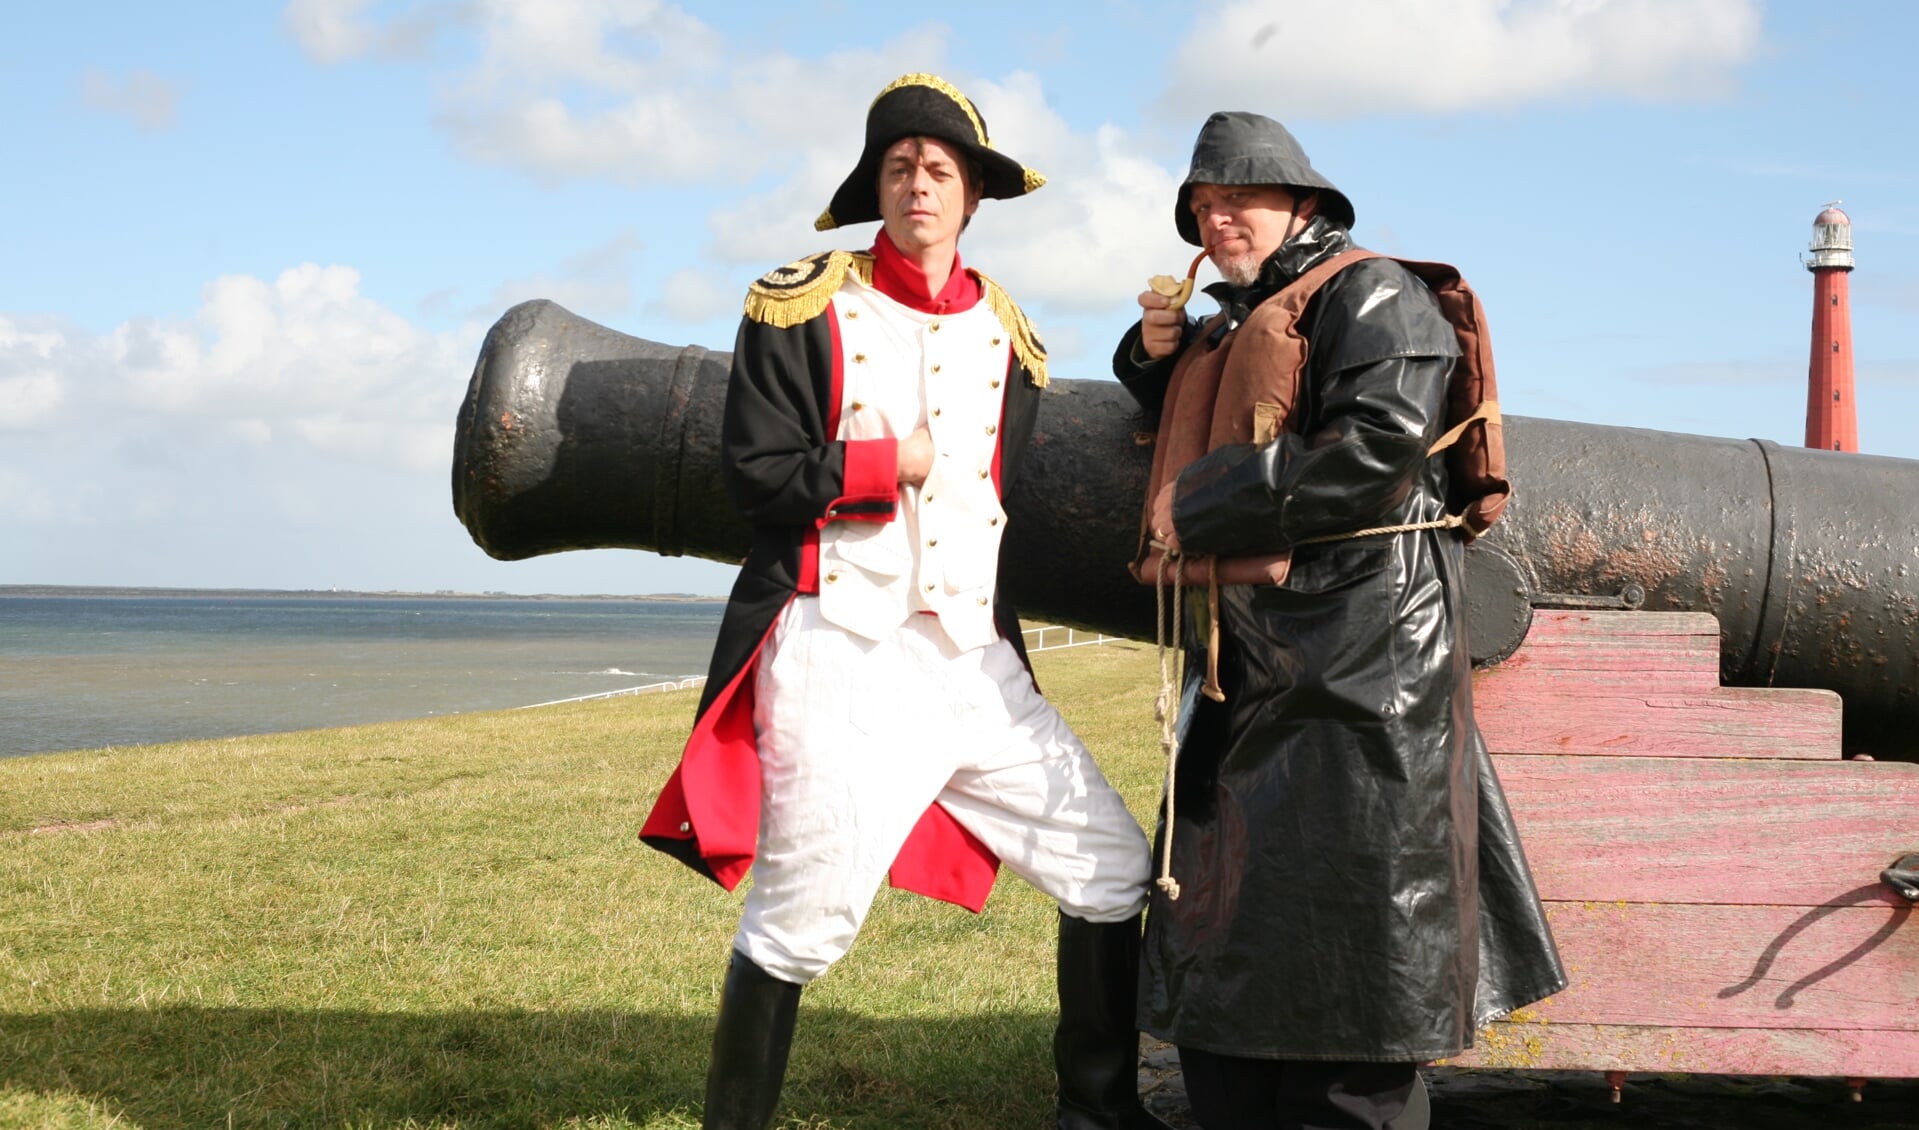 Napoleon en Dorus Rijkers hebben een belangrijke rol in de geschiedenis van Den Helder gespeeld. (Foto: aangeleverd)